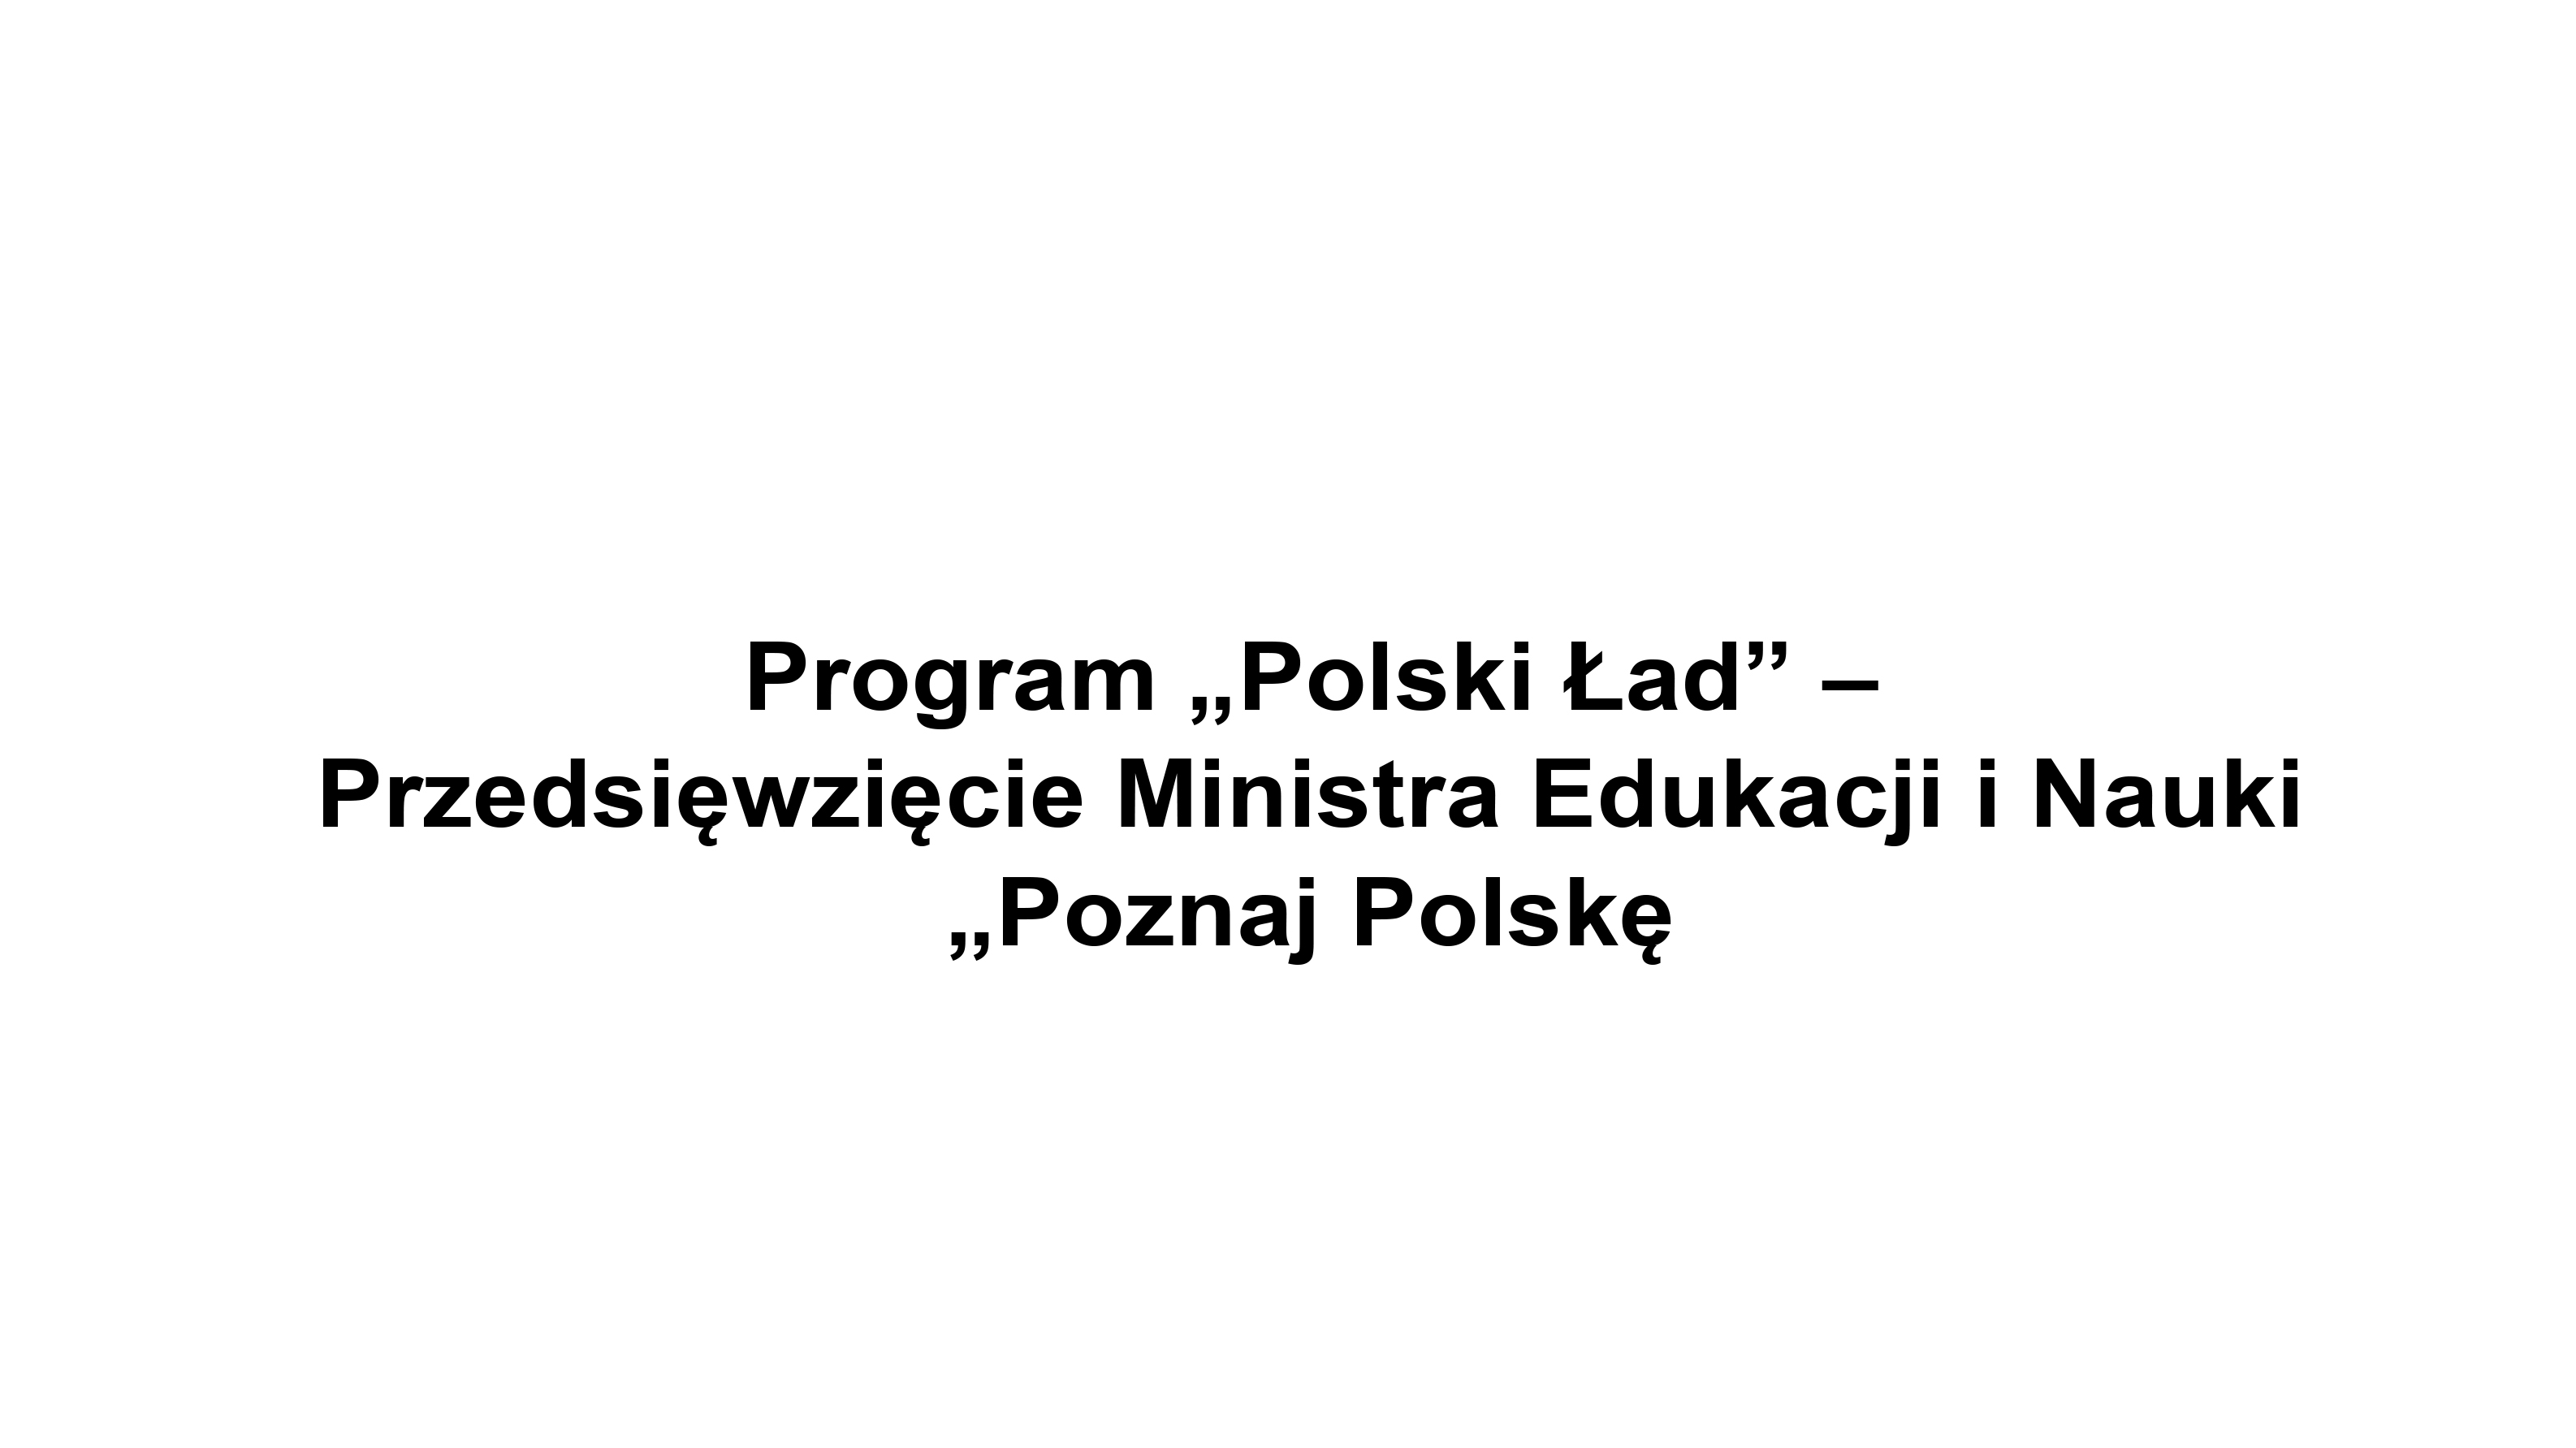 Ilustracja do informacji: Program .. Polski Ład"- Przedsięwzięcie Ministra Edukacji i Nauki ,,Poznaj Polskę"